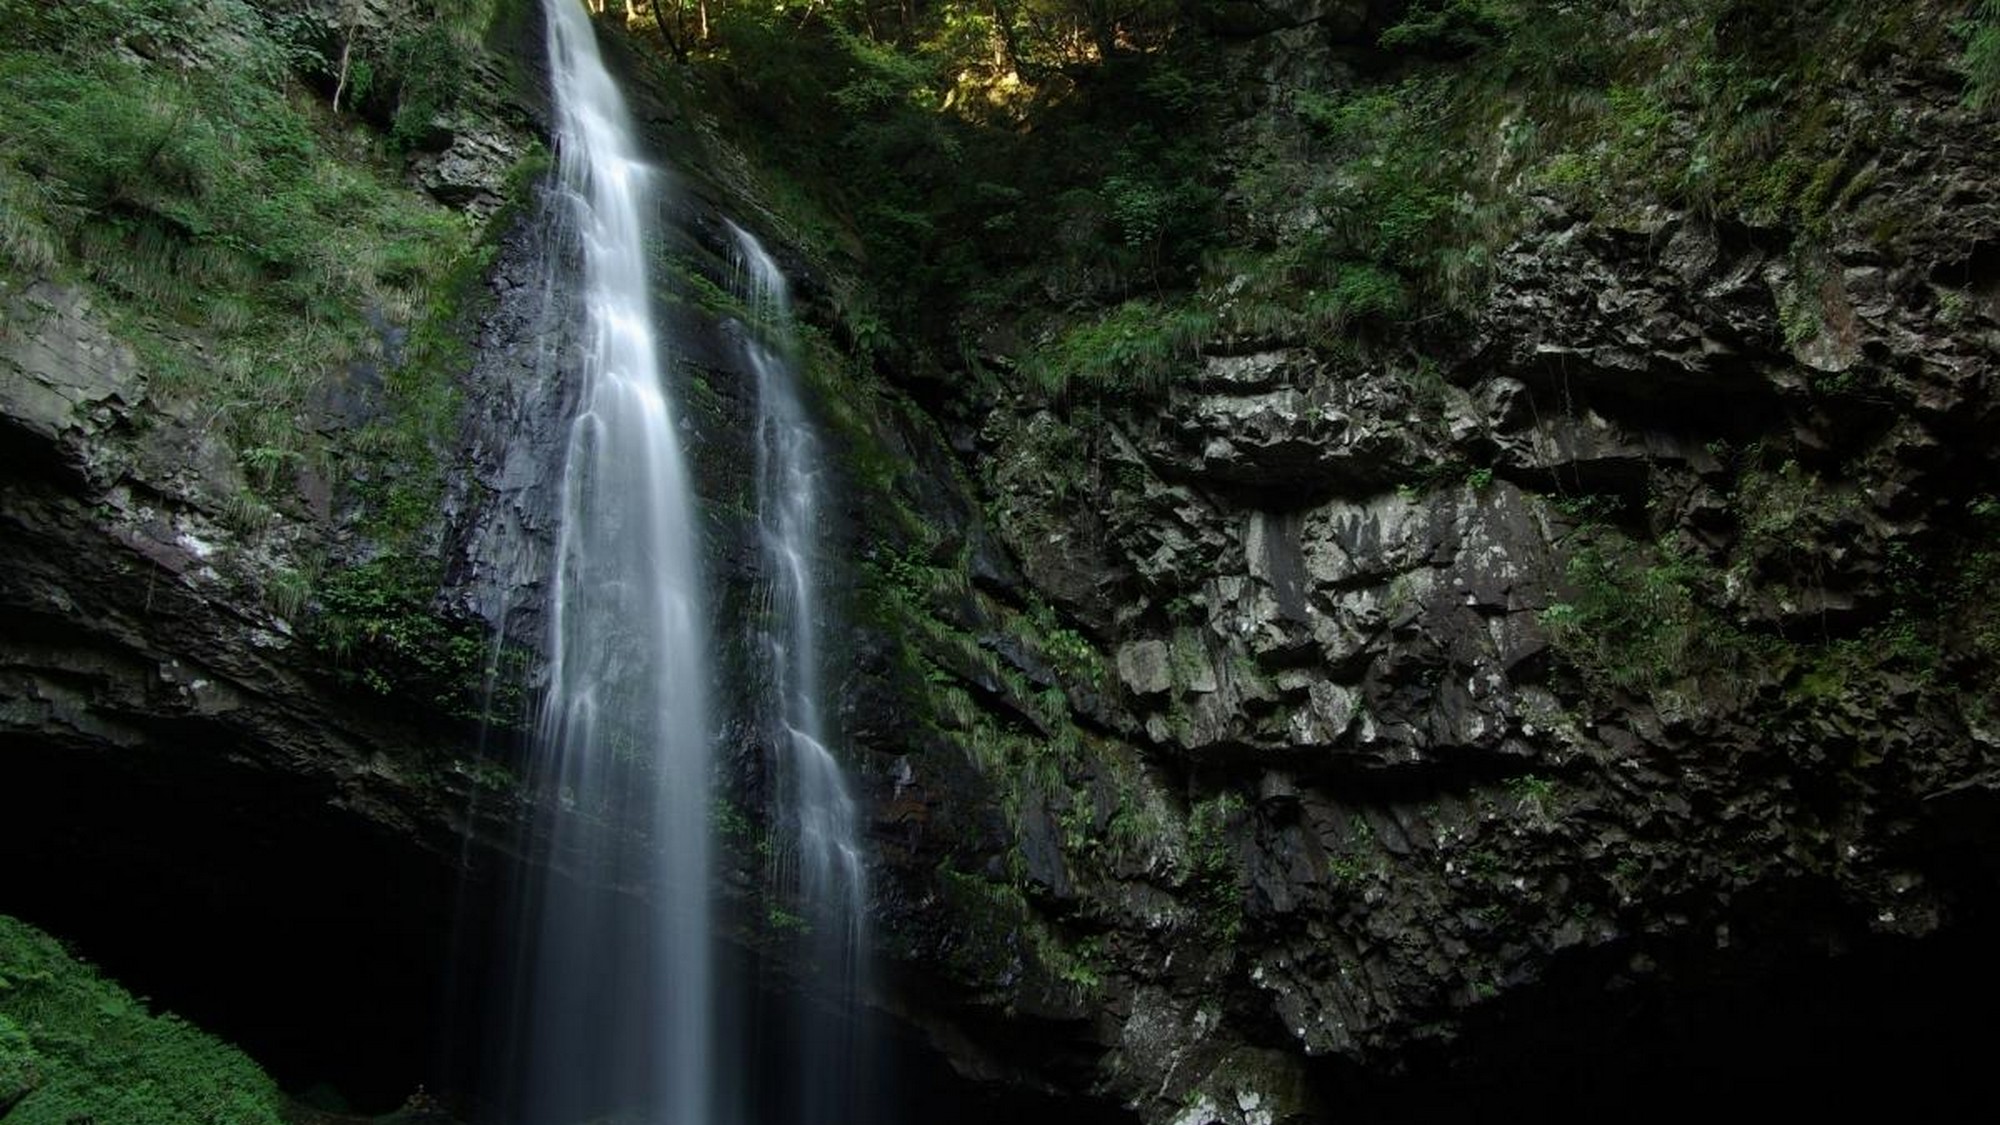 龍頭が滝は「日本の滝百選」に選ばれた滝で、奥にある洞窟から滝の裏側を見ることができます。